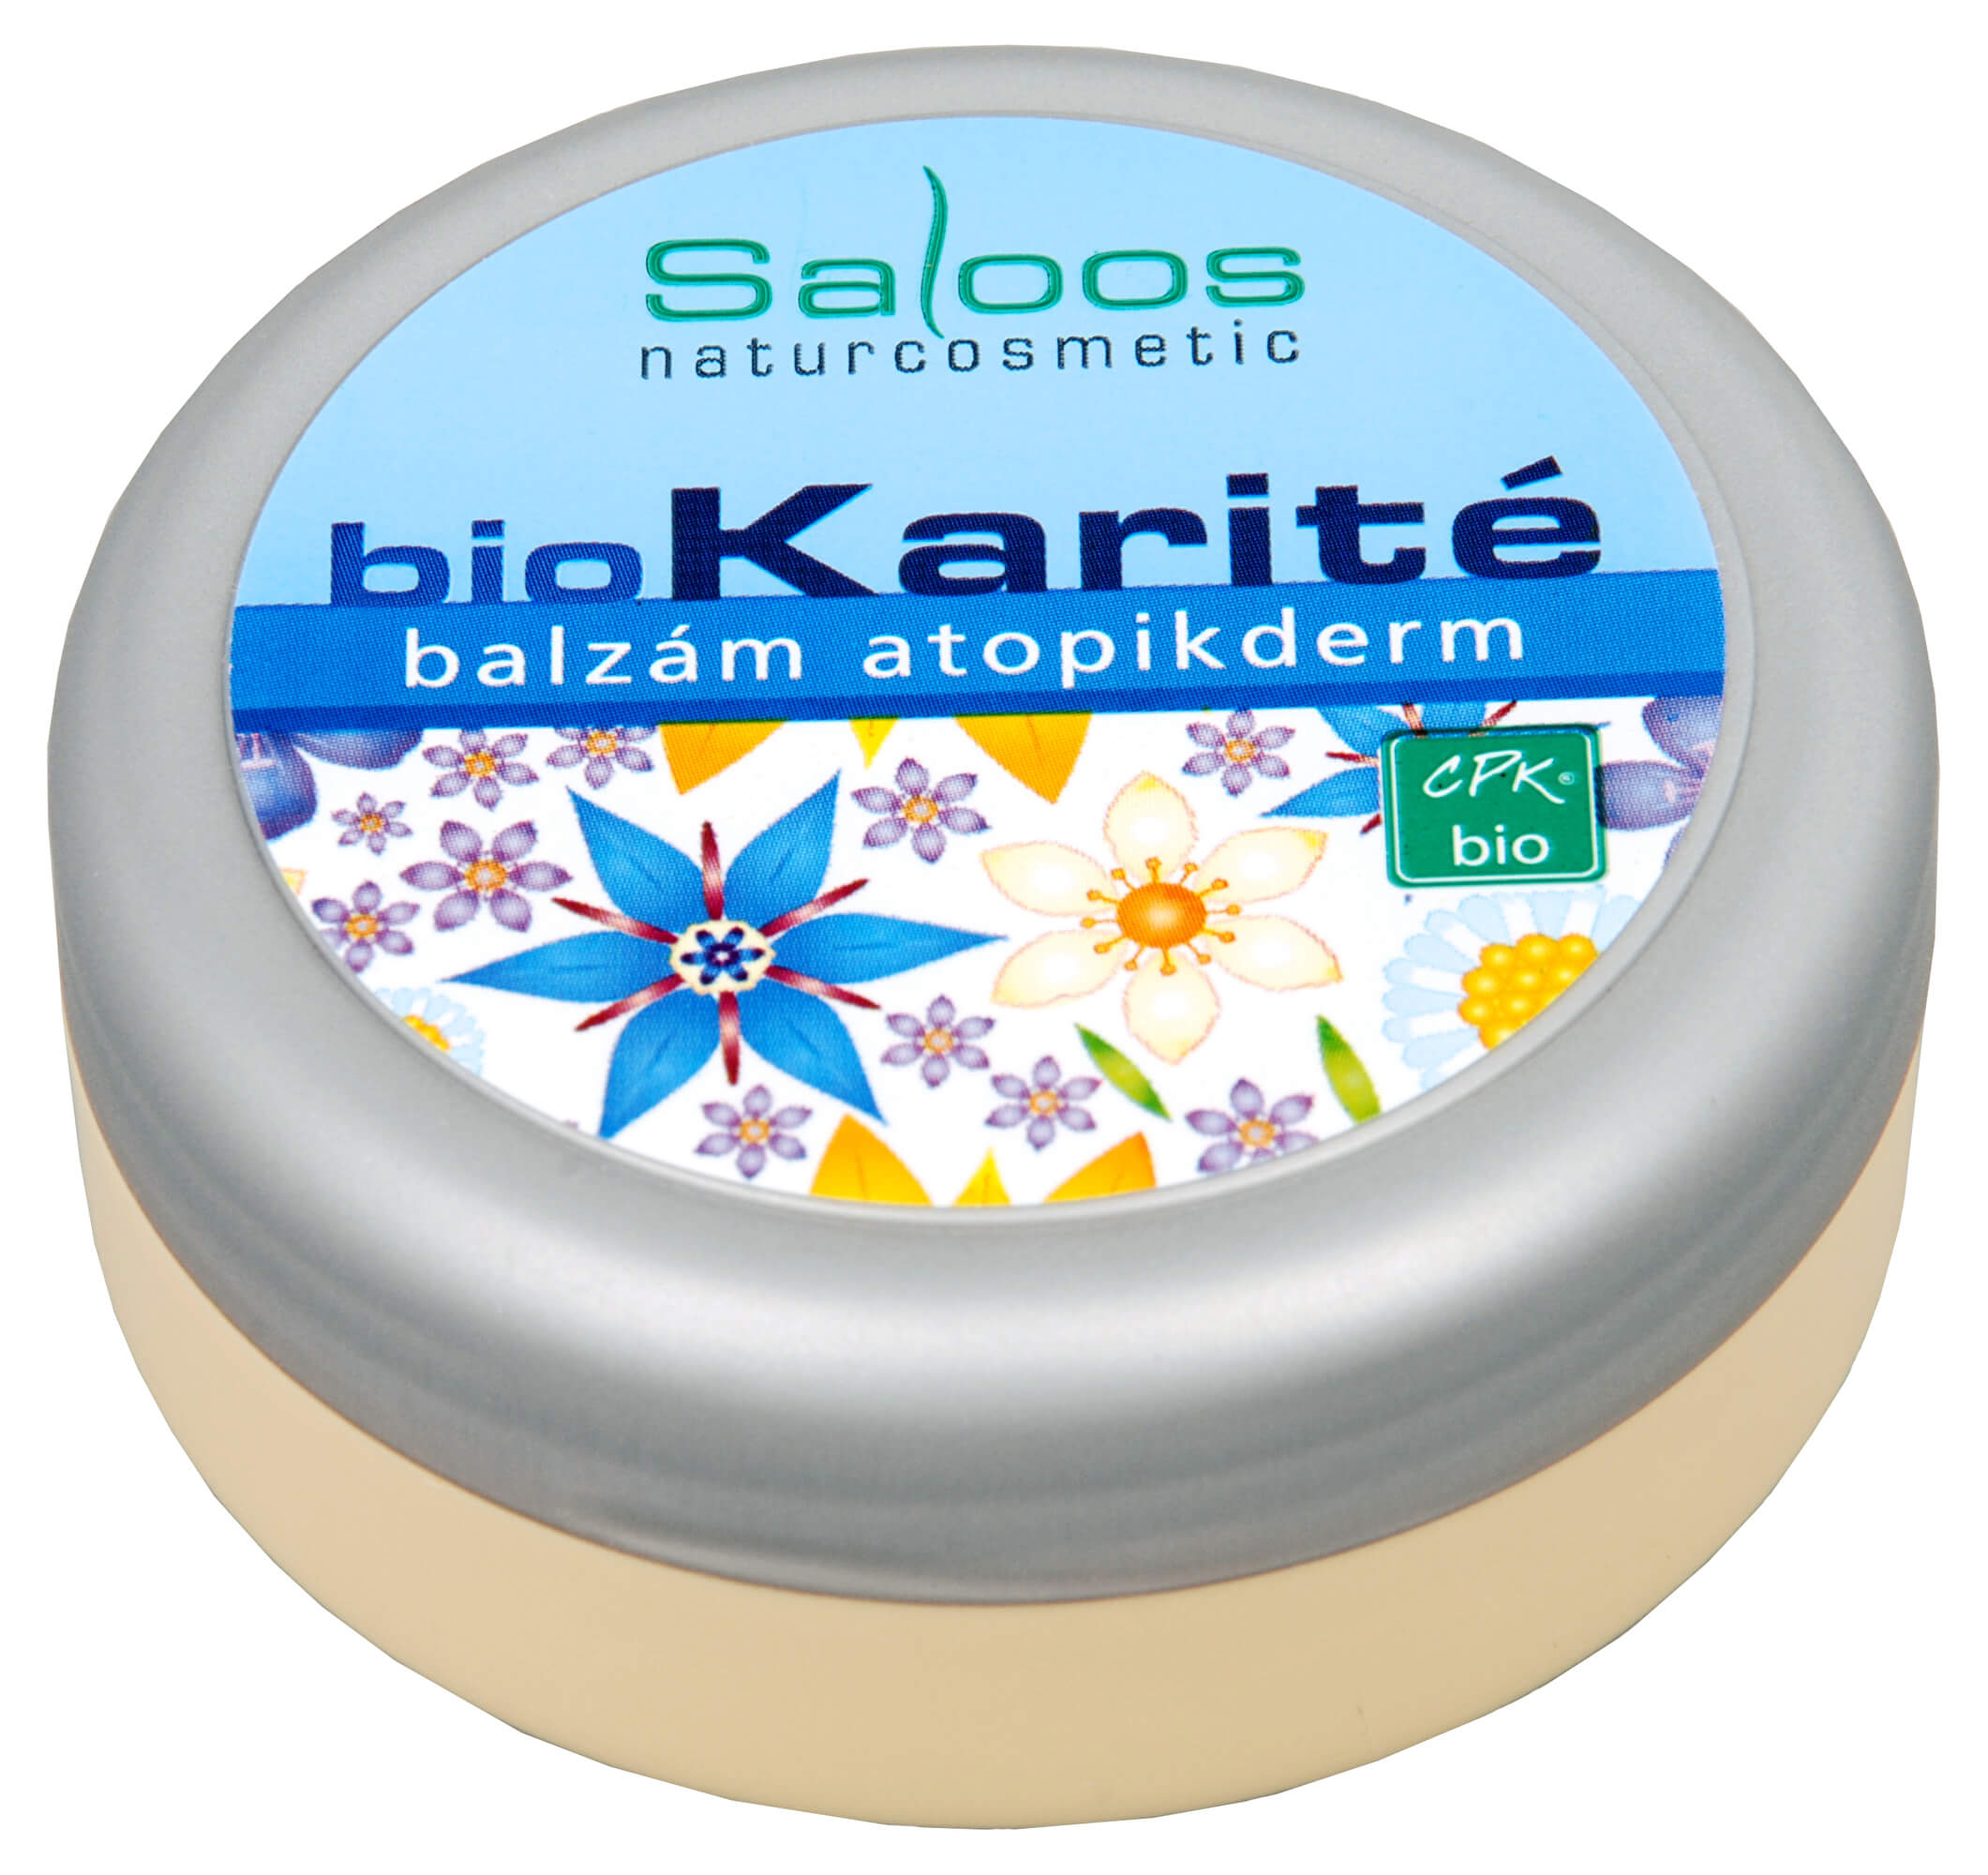 Zobrazit detail výrobku Saloos Bio Karité balzám - Atopikderm 250 ml + 2 měsíce na vrácení zboží